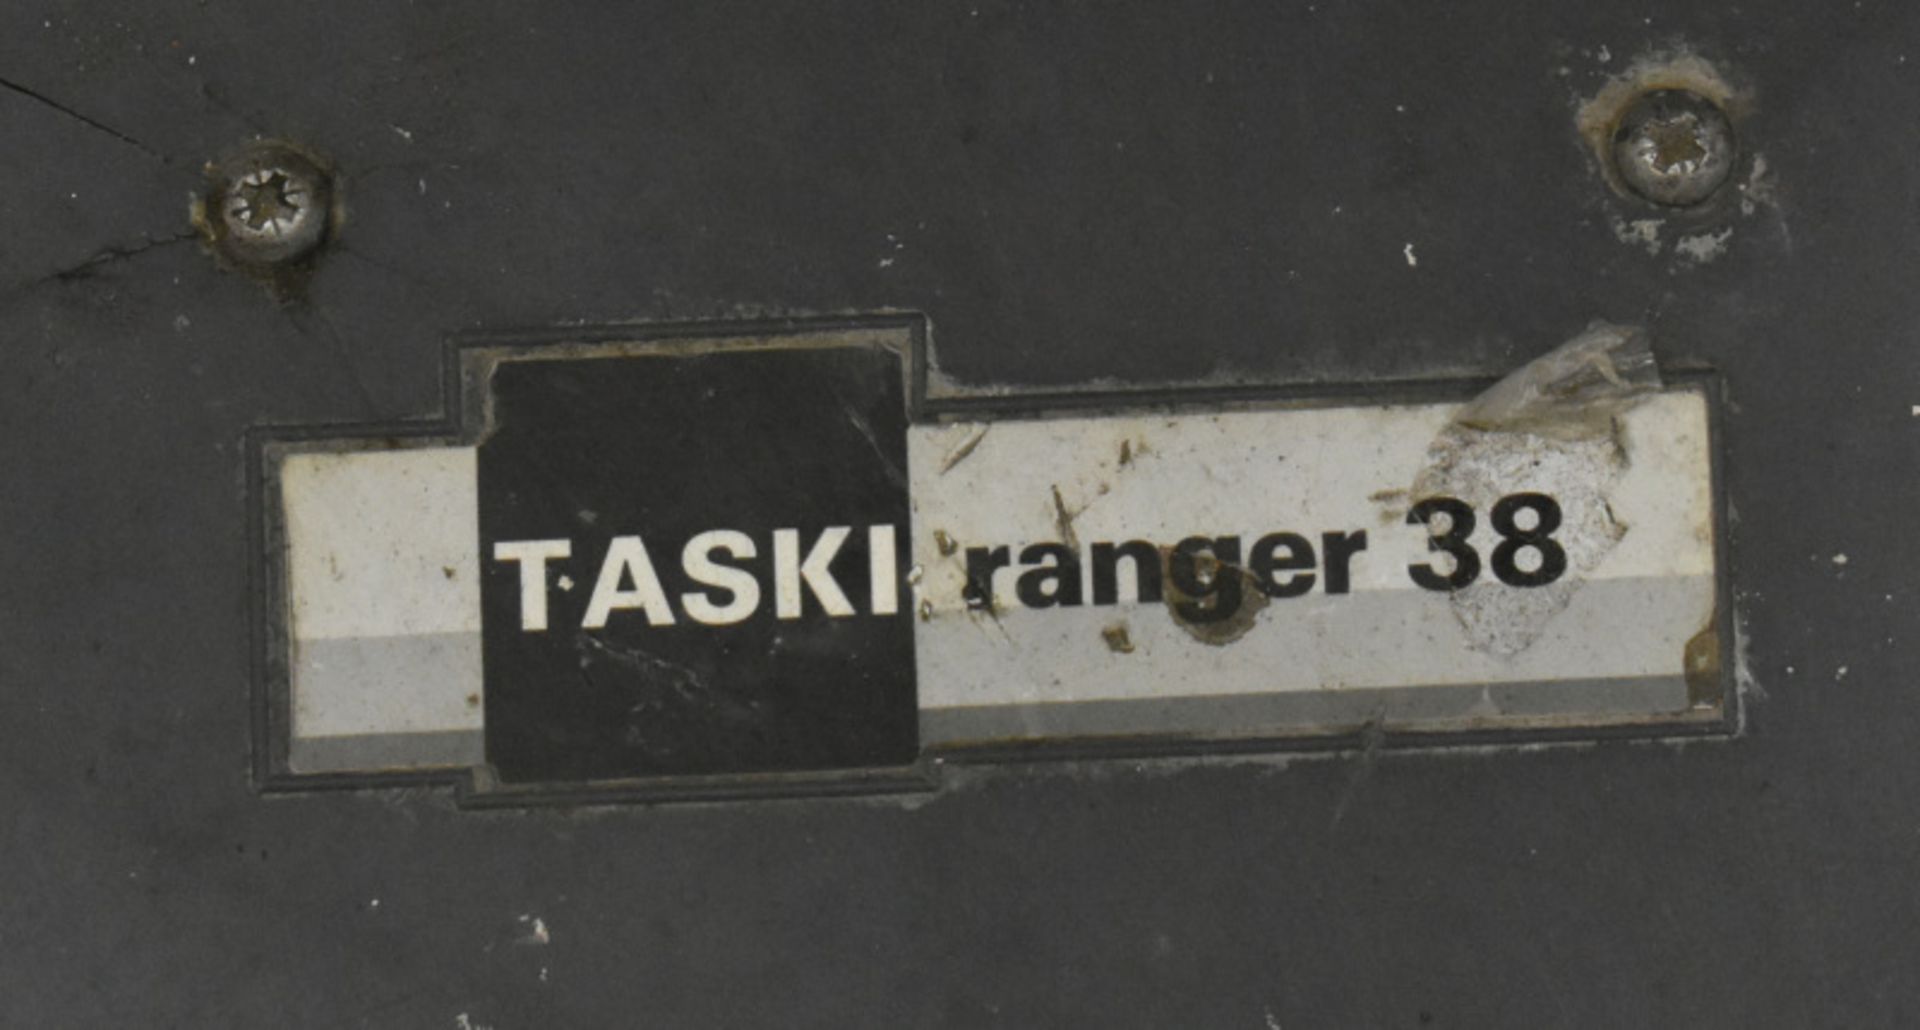 Taski Ranger 38 Floor Buffer, powers up - Image 2 of 3